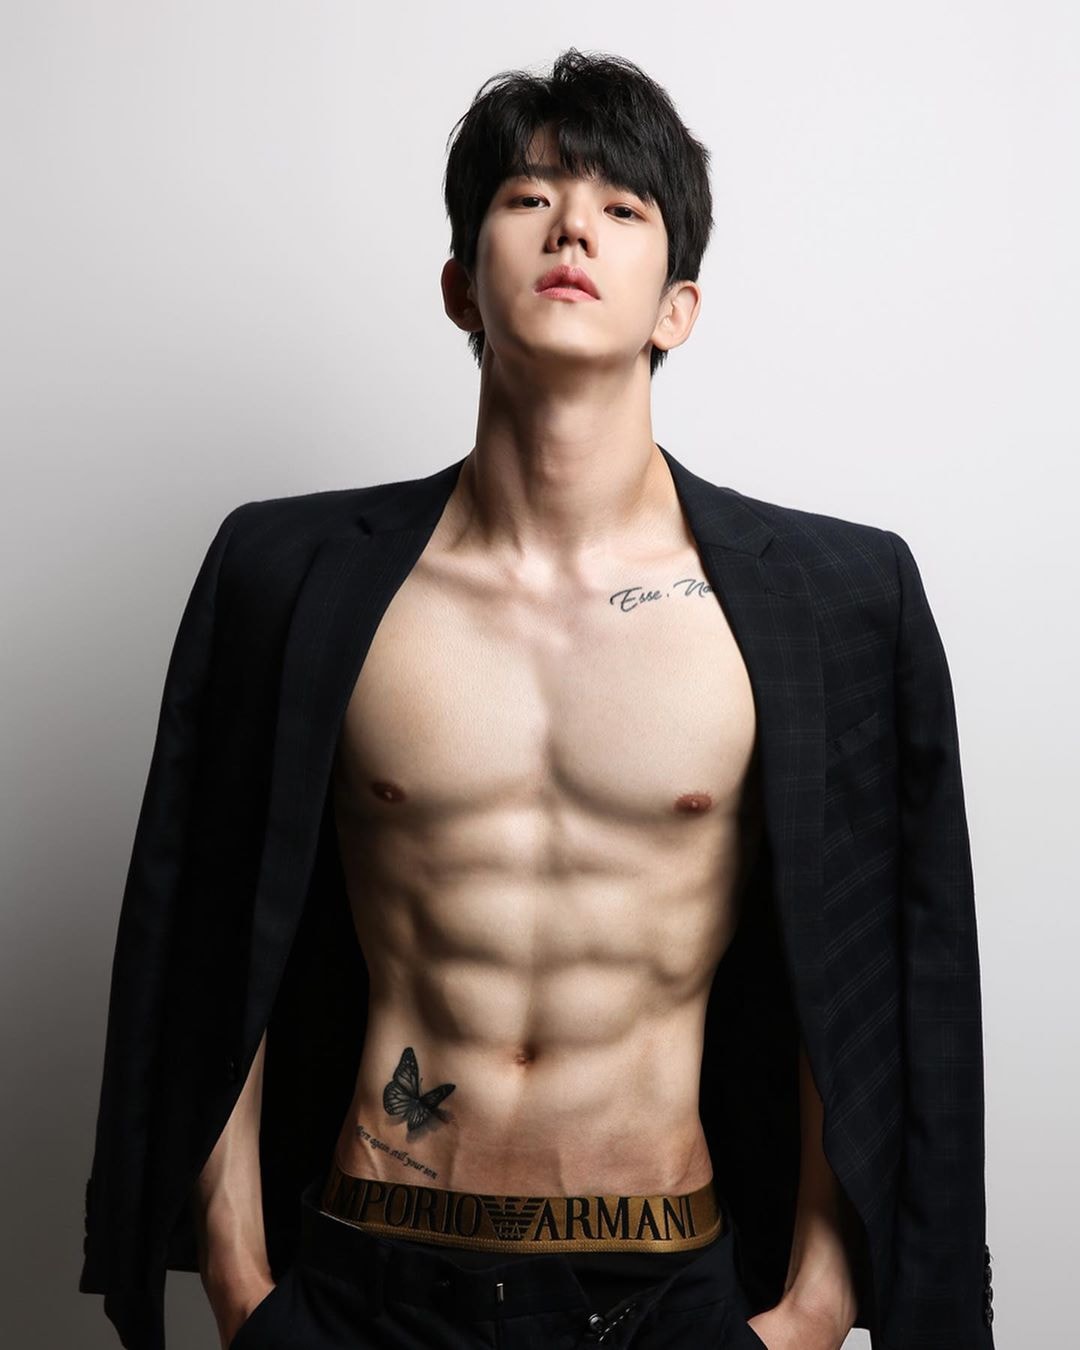 Đam mê vẻ đẹp nam tính của Hàn Quốc? Thì bạn không thể bỏ qua hình ảnh traị đẹp Hàn. Anh chàng này tựa như một người mẫu chuyên nghiệp, với đường nét khuôn mặt hoàn hảo và sức quyến rũ đầy mê hoặc.